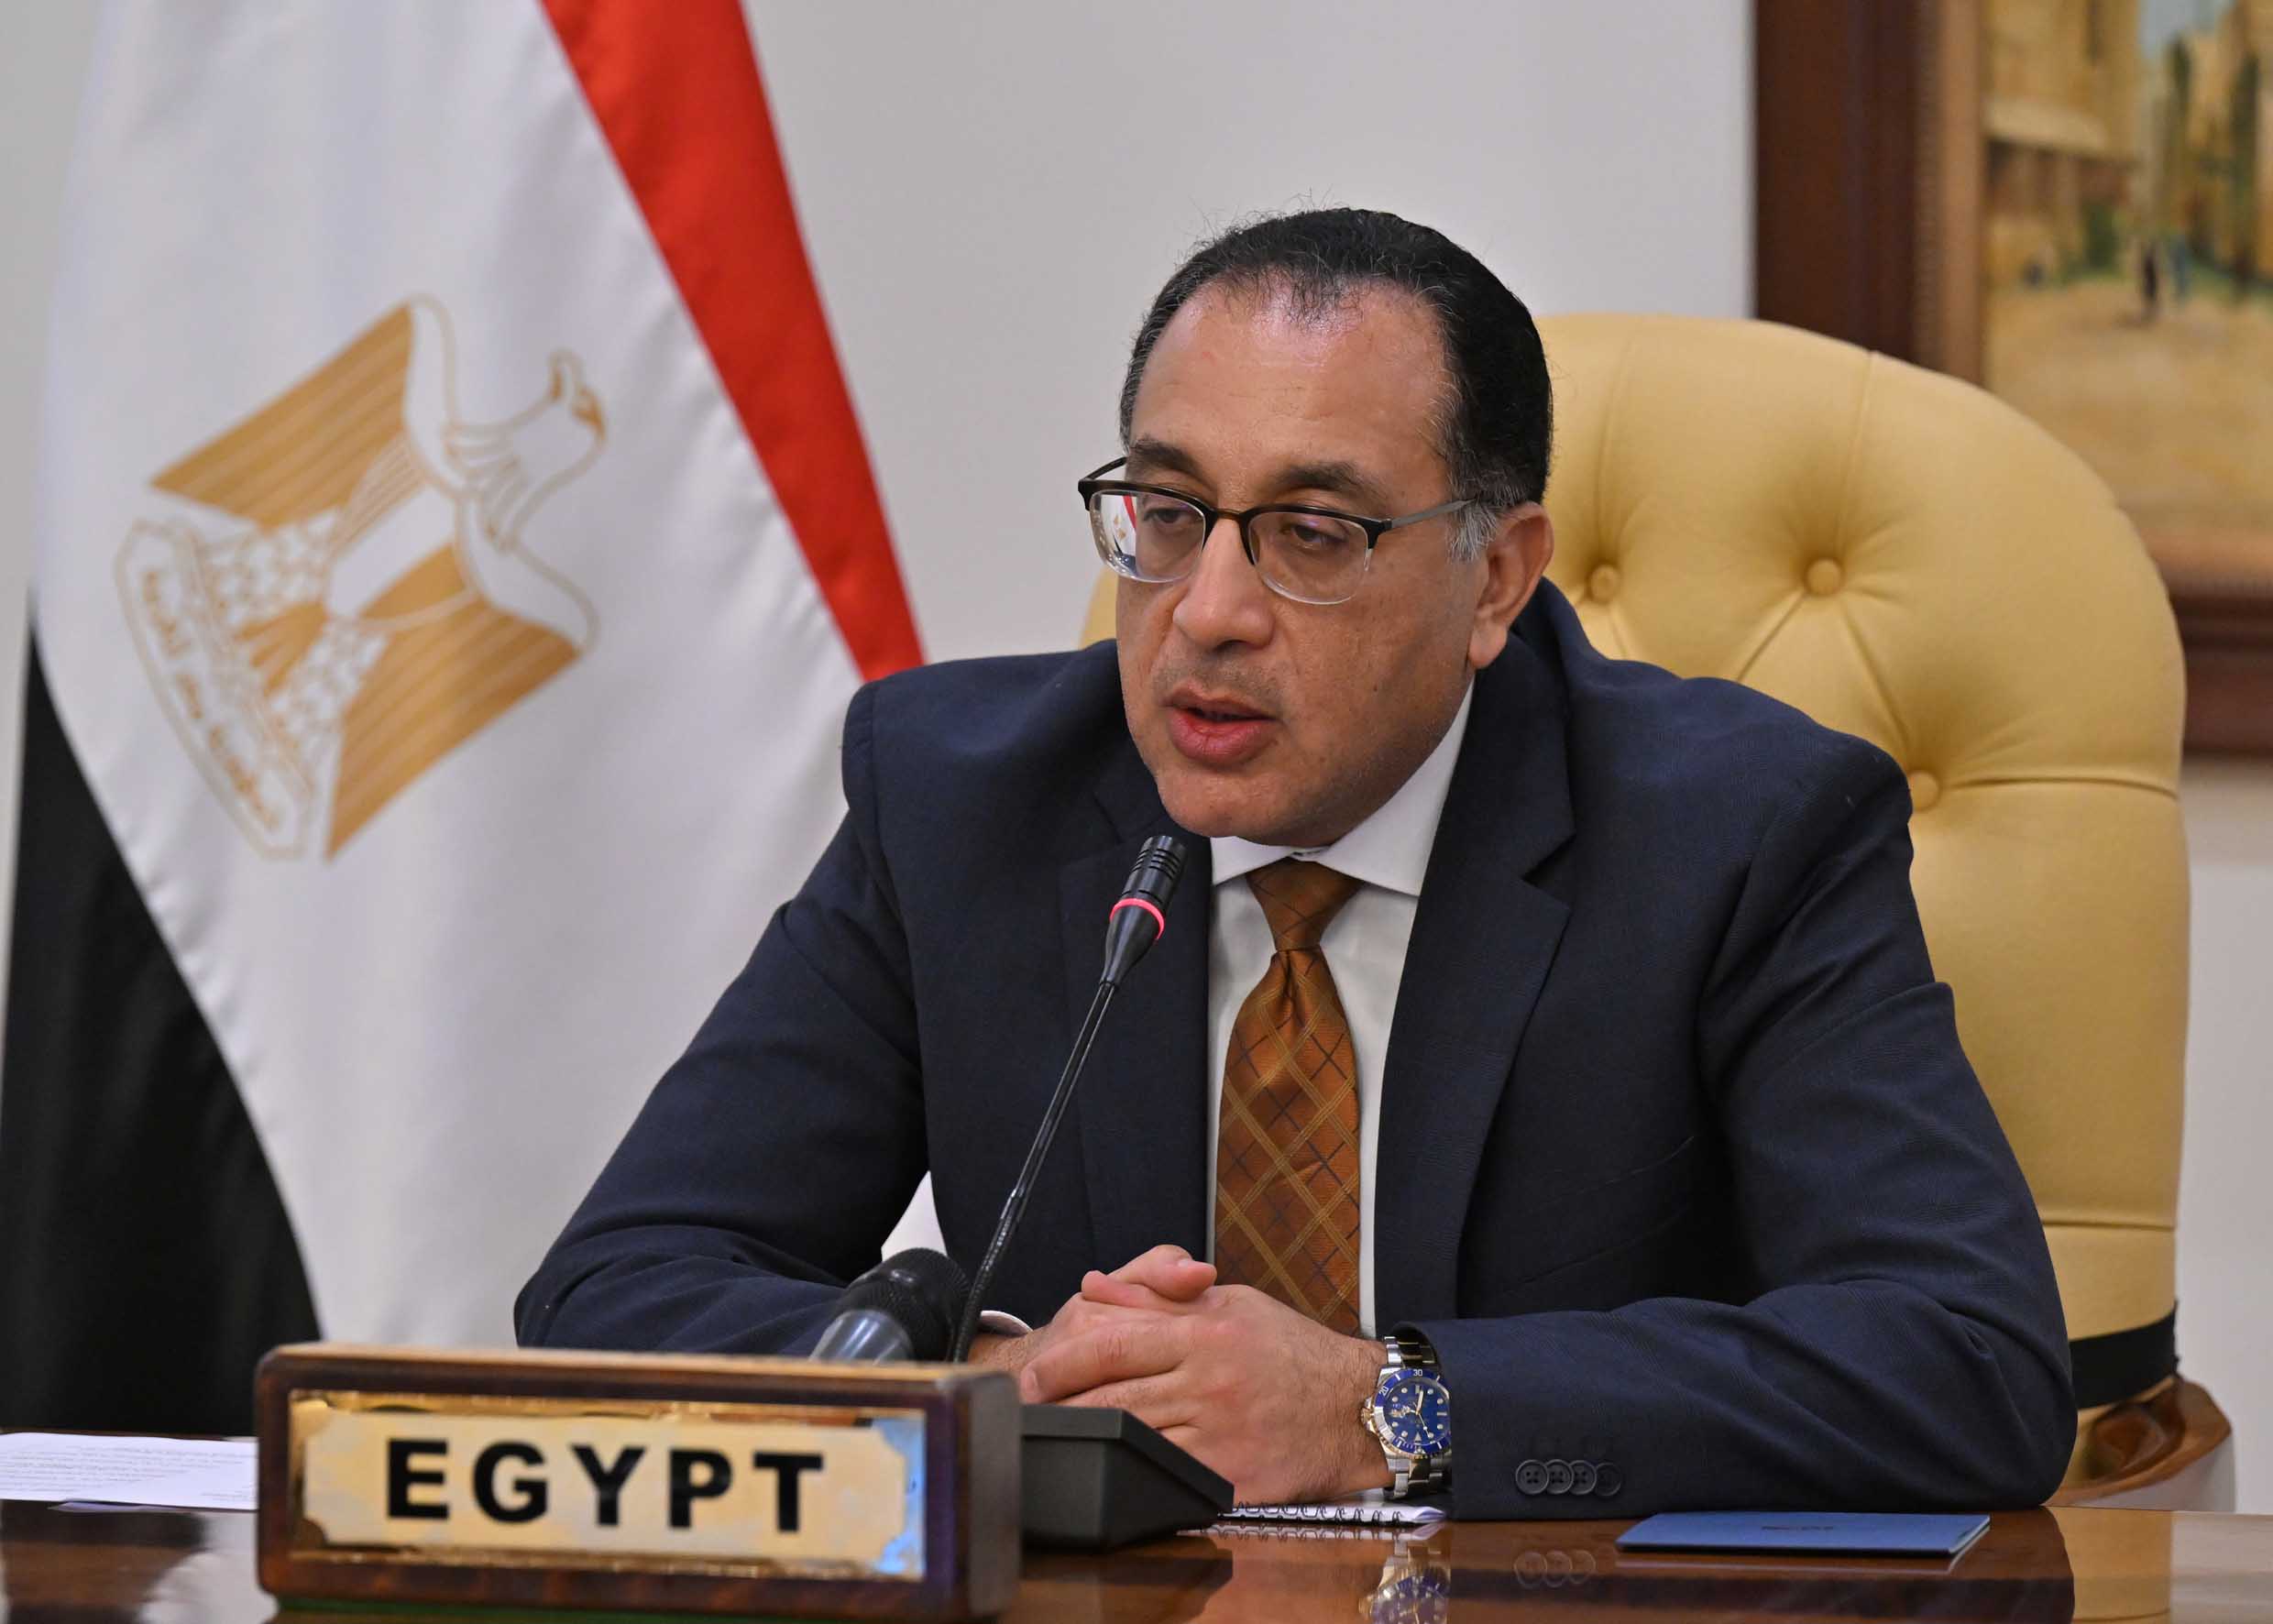 أسوان .. رئيس الوزراء يتفقد معرض "أيادي مصر" بالمحافظة ويستمع لإنجازات هذا المشروع